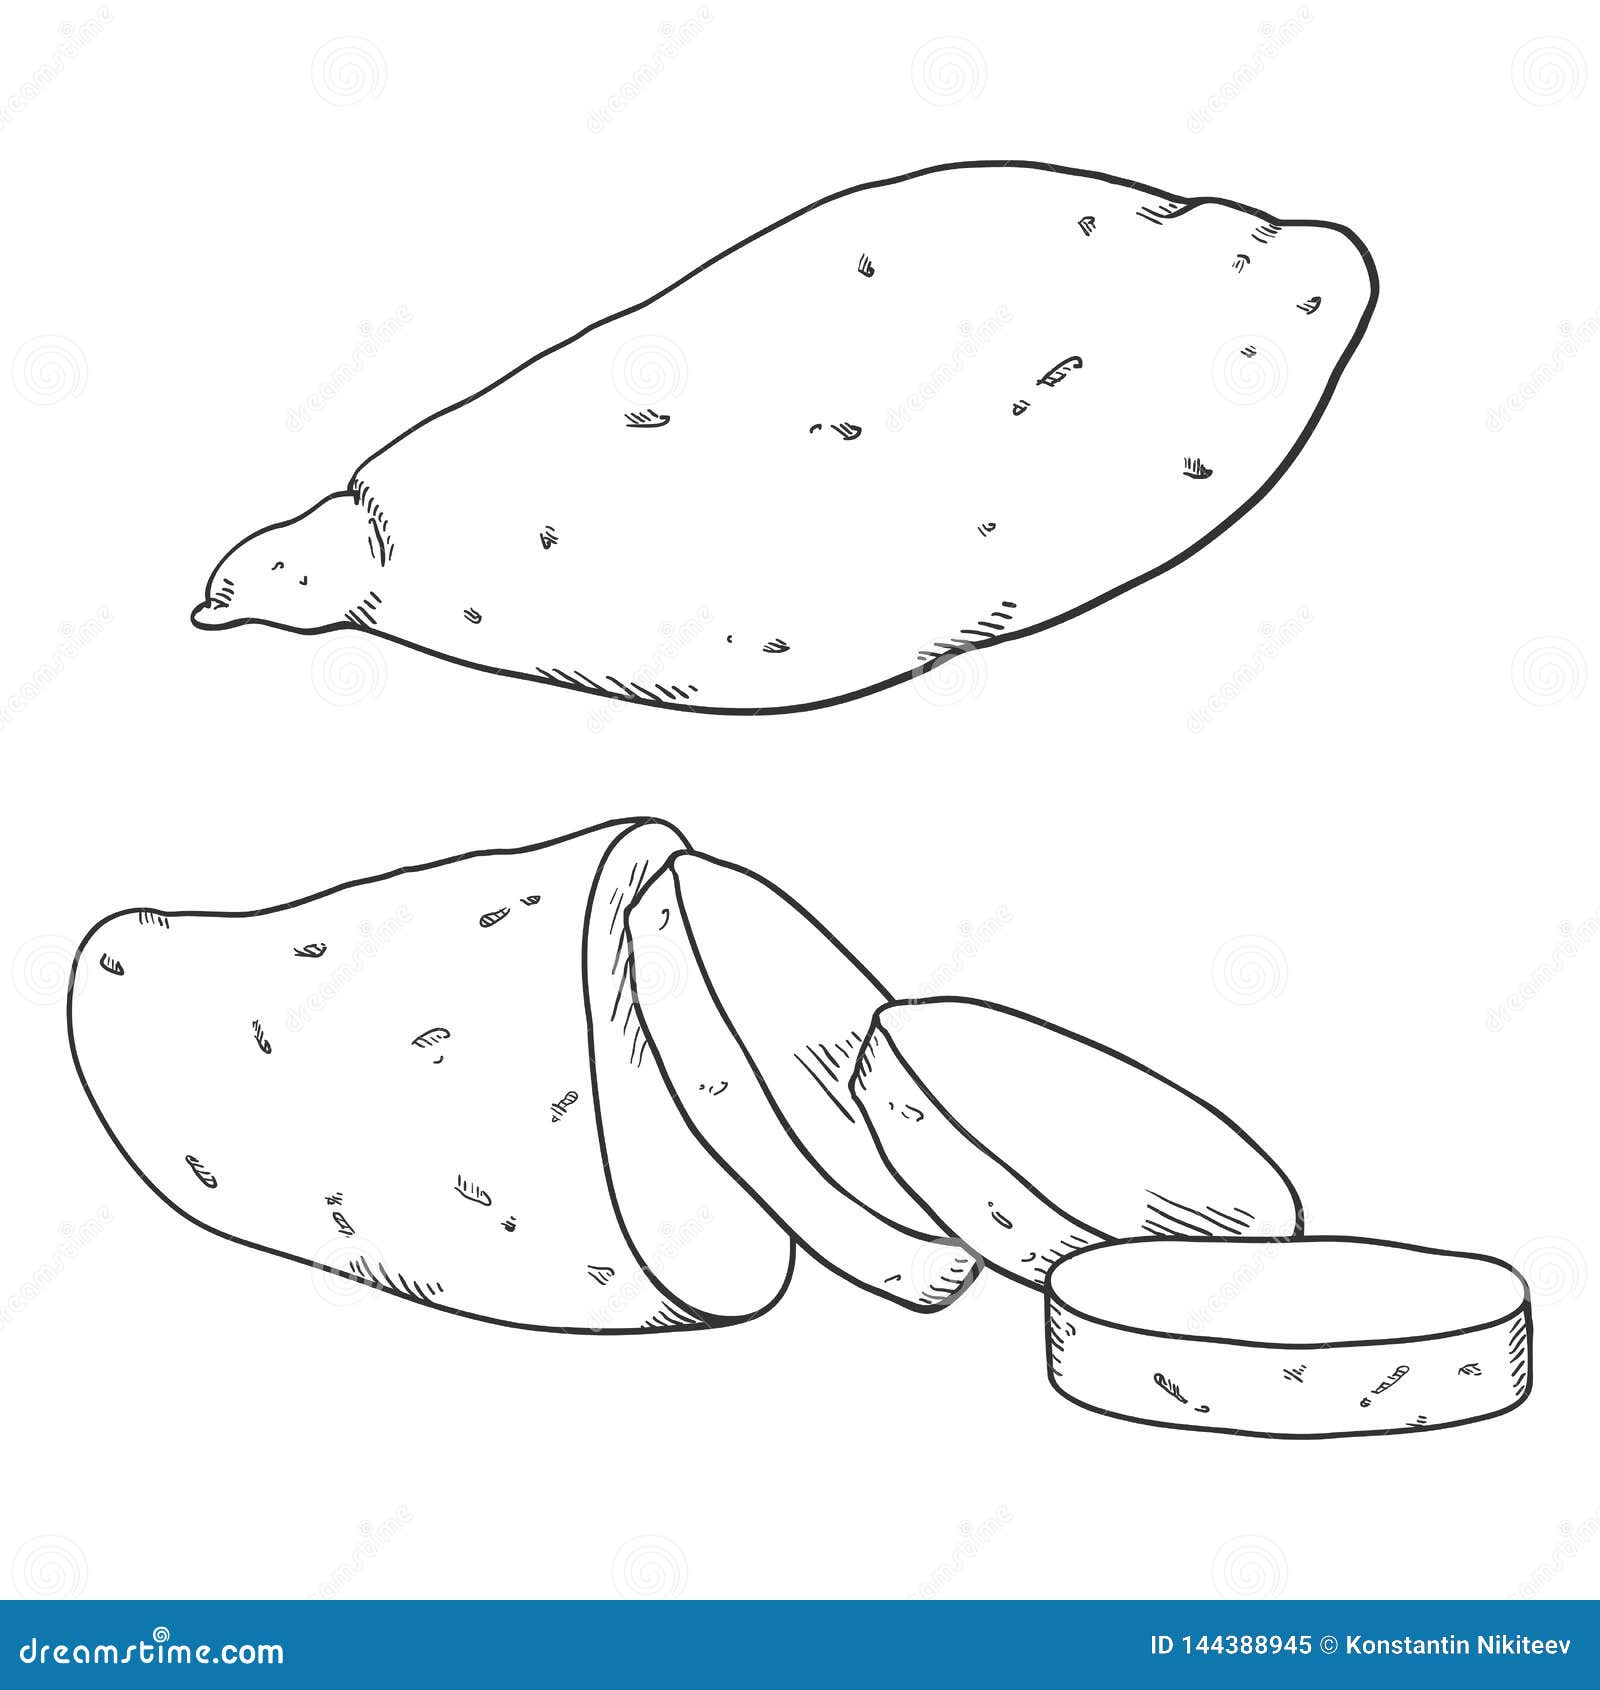 Desenho de Fruta-pão Inteira e Corte Transversal para colorir